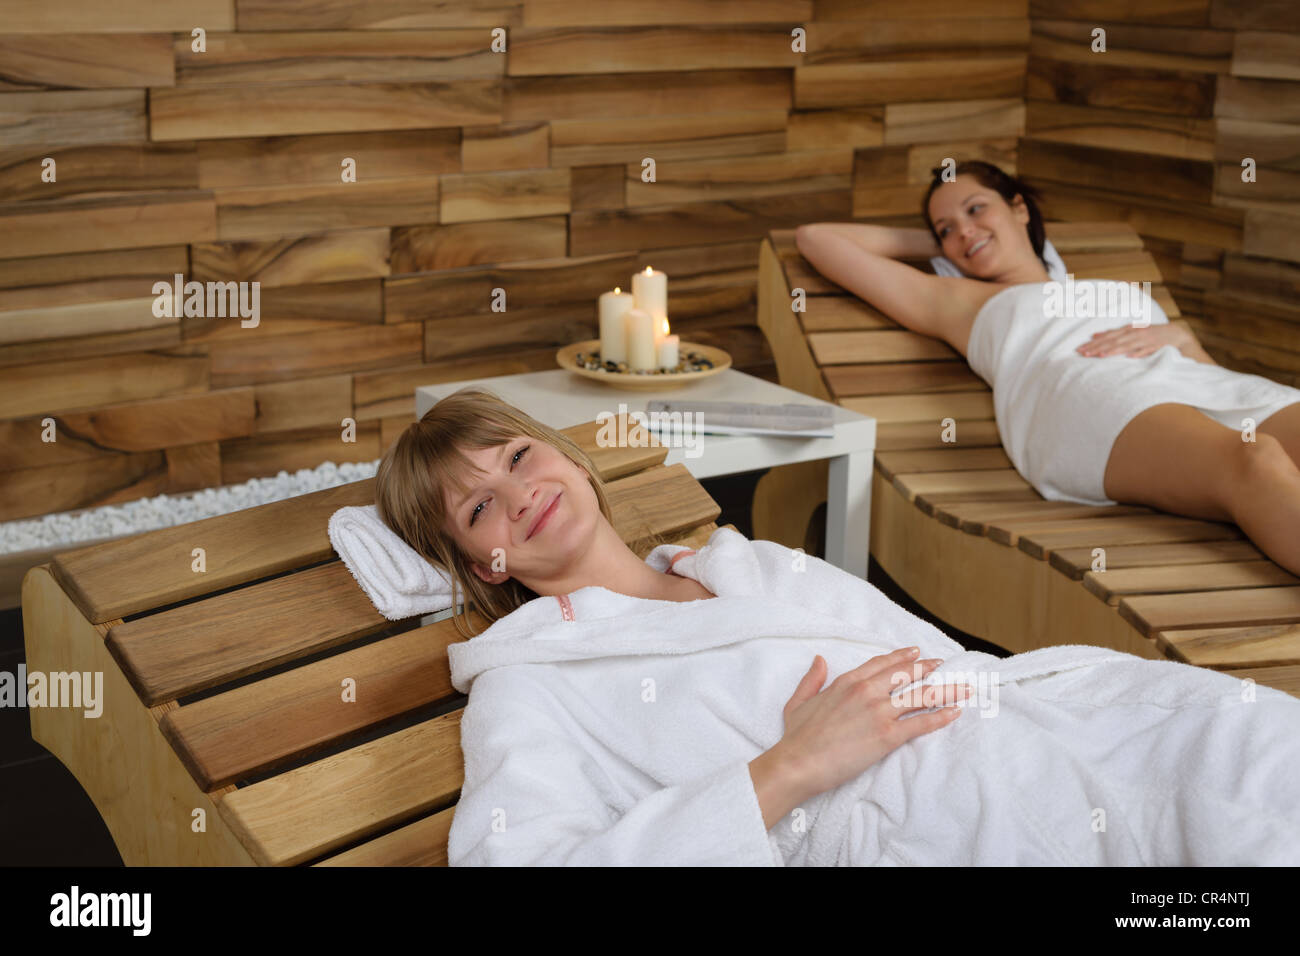 Glückliche junge Frau am Holzstuhl im Wellnesscenter entspannen Stockfoto